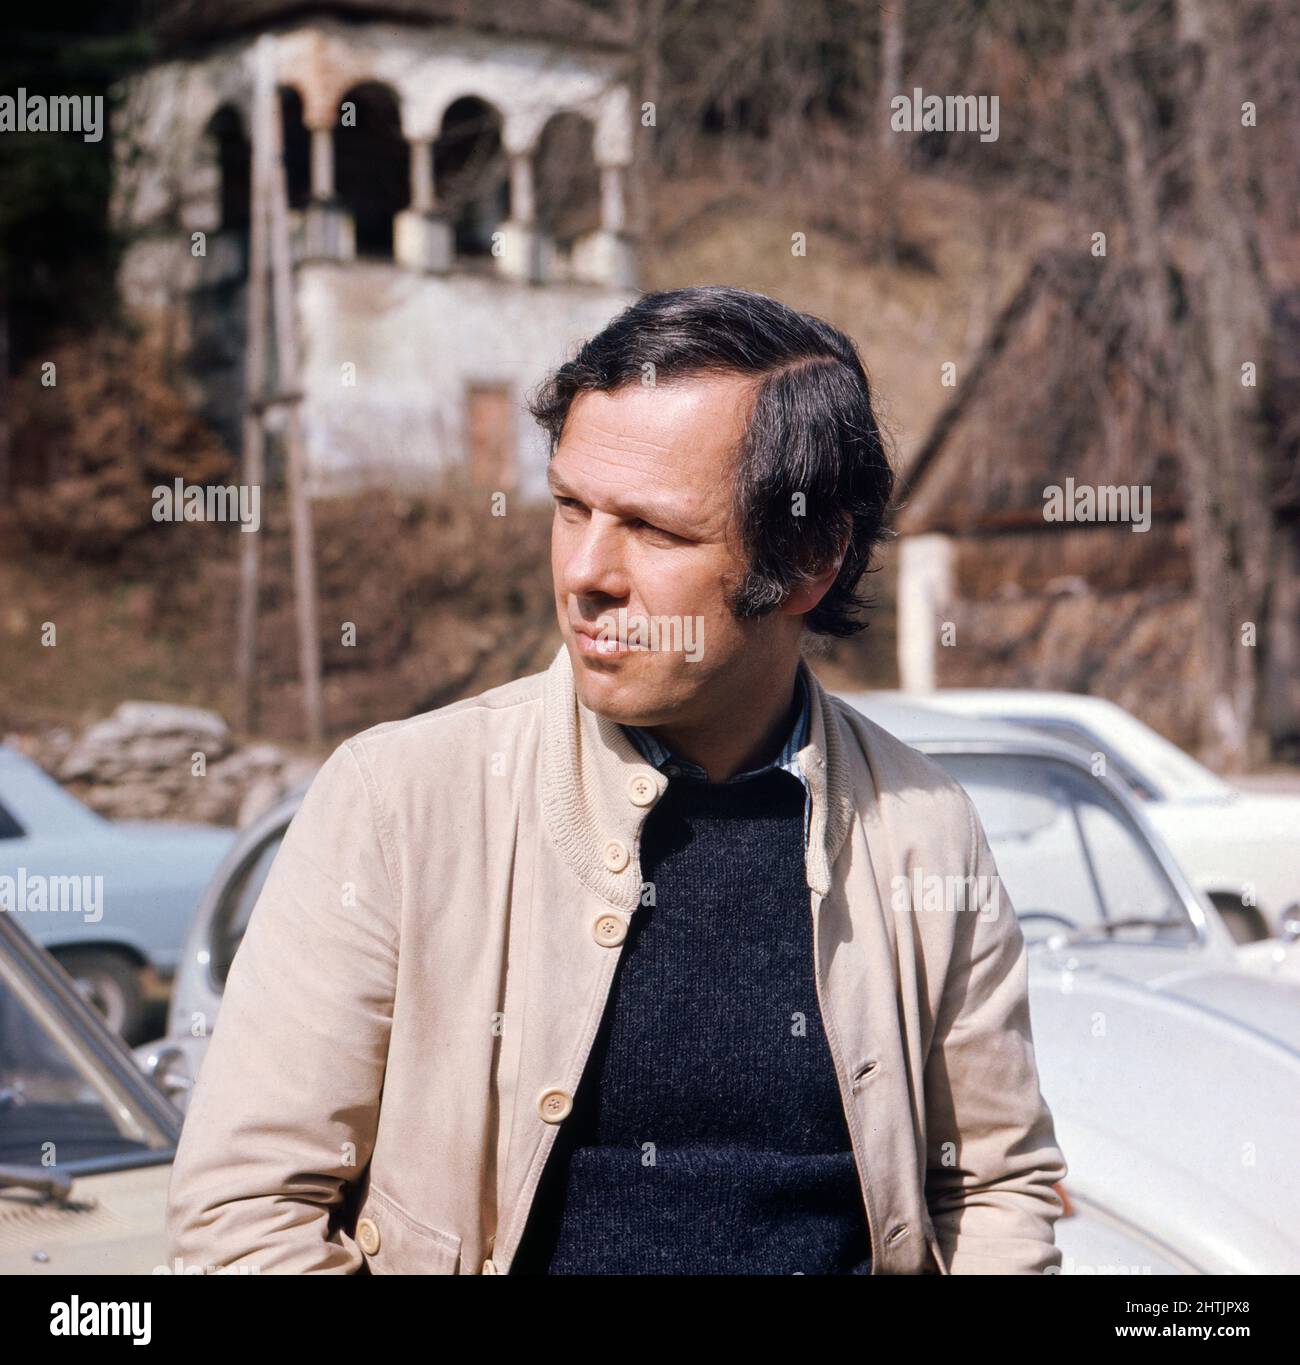 Wunschloses Unglück, Fernsehfilm nach der gleichnamigen Erzählung von Schriftsteller Peter Handke, Österreich 1972, Regisseur Wolfgang Glück Stock Photo